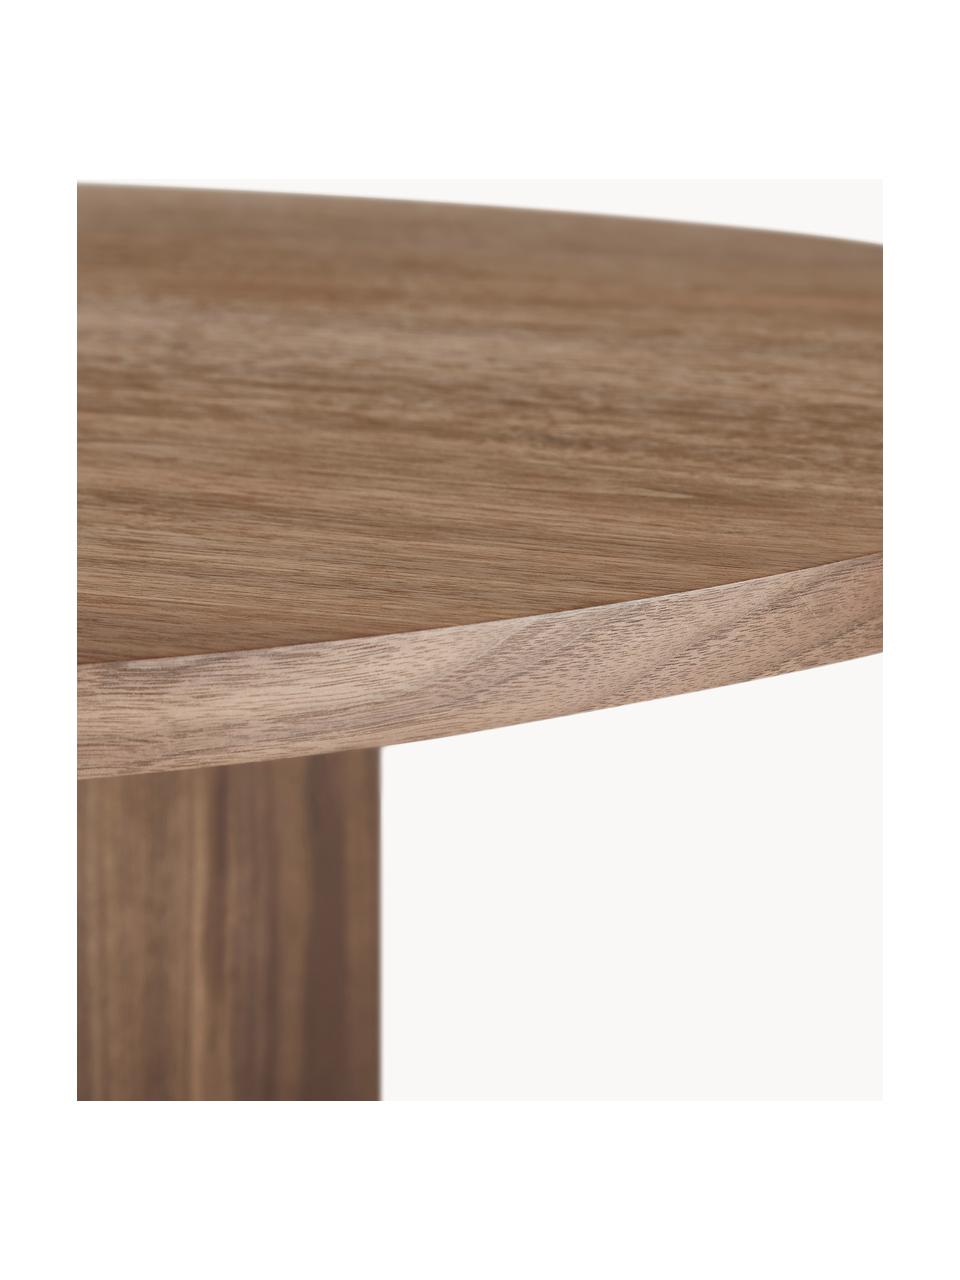 Ovale houten eettafel Toni, 200 x 90 cm, MDF met gelakt eikenhoutfineer

Dit product is gemaakt van duurzaam geproduceerd, FSC®-gecertificeerd hout., Walnoothout, B 200 x D 90 cm